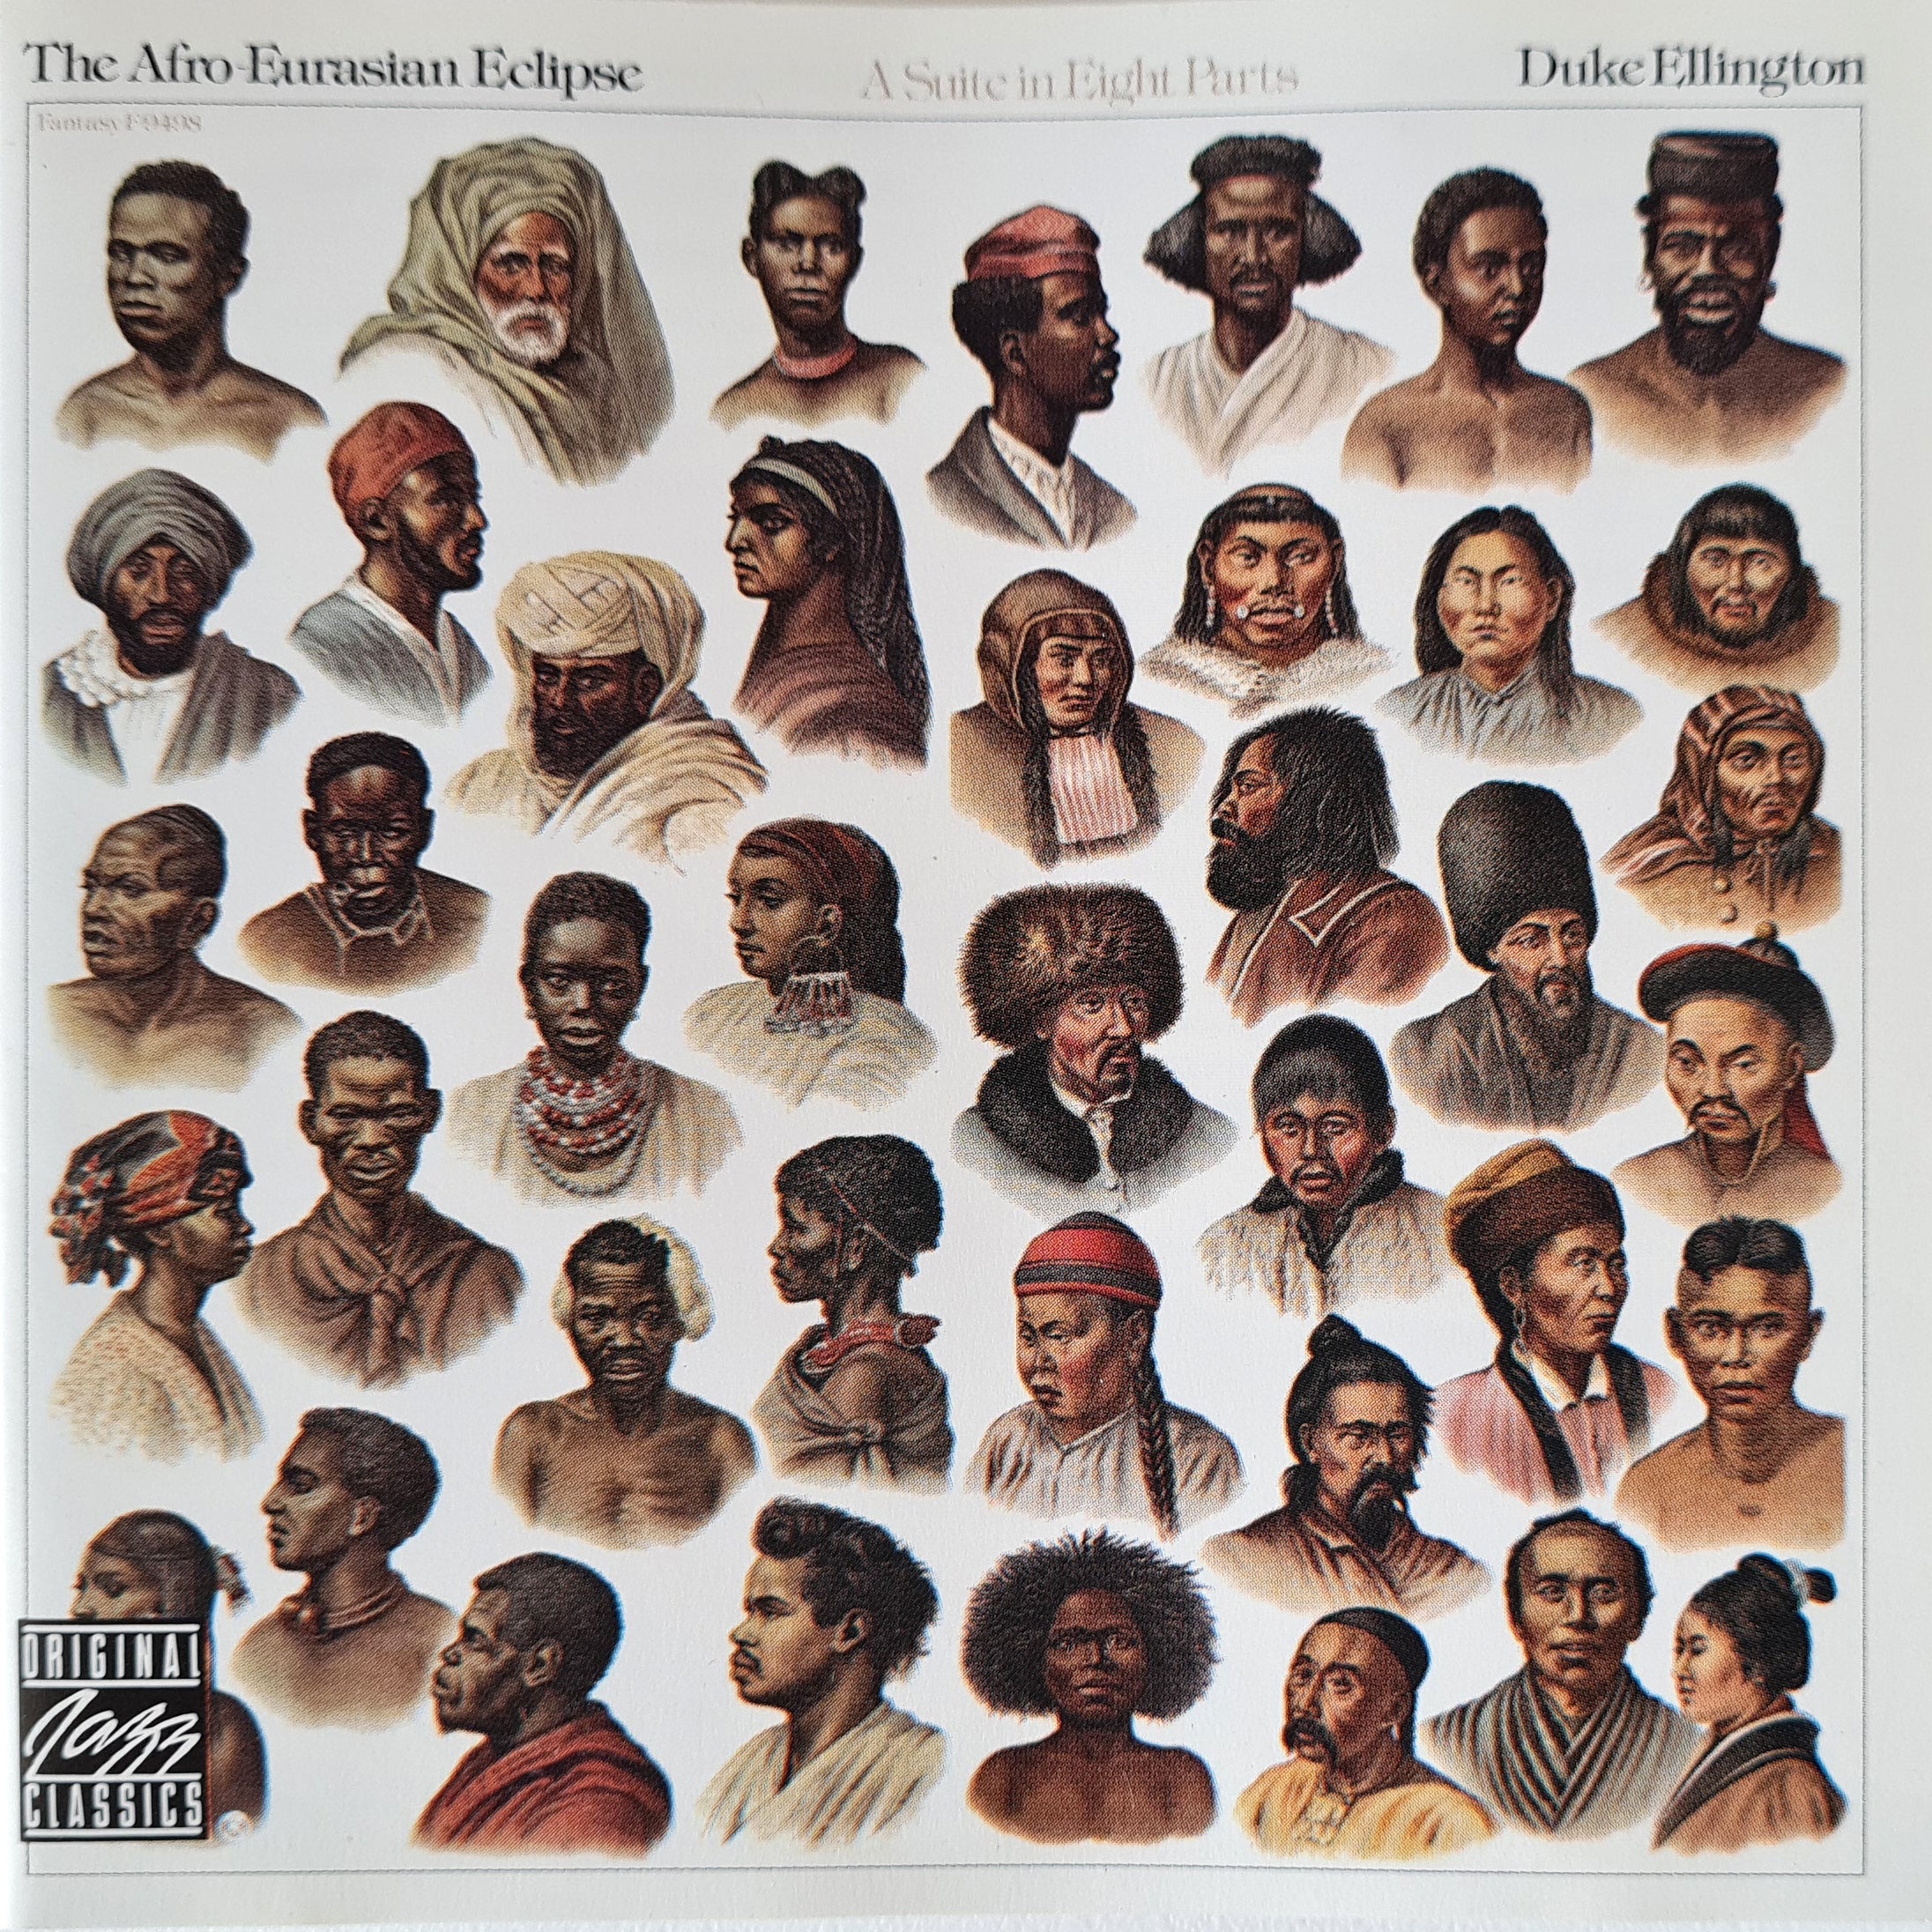 Duke Ellington - The Afro-Eurasian Eclipse (CD)